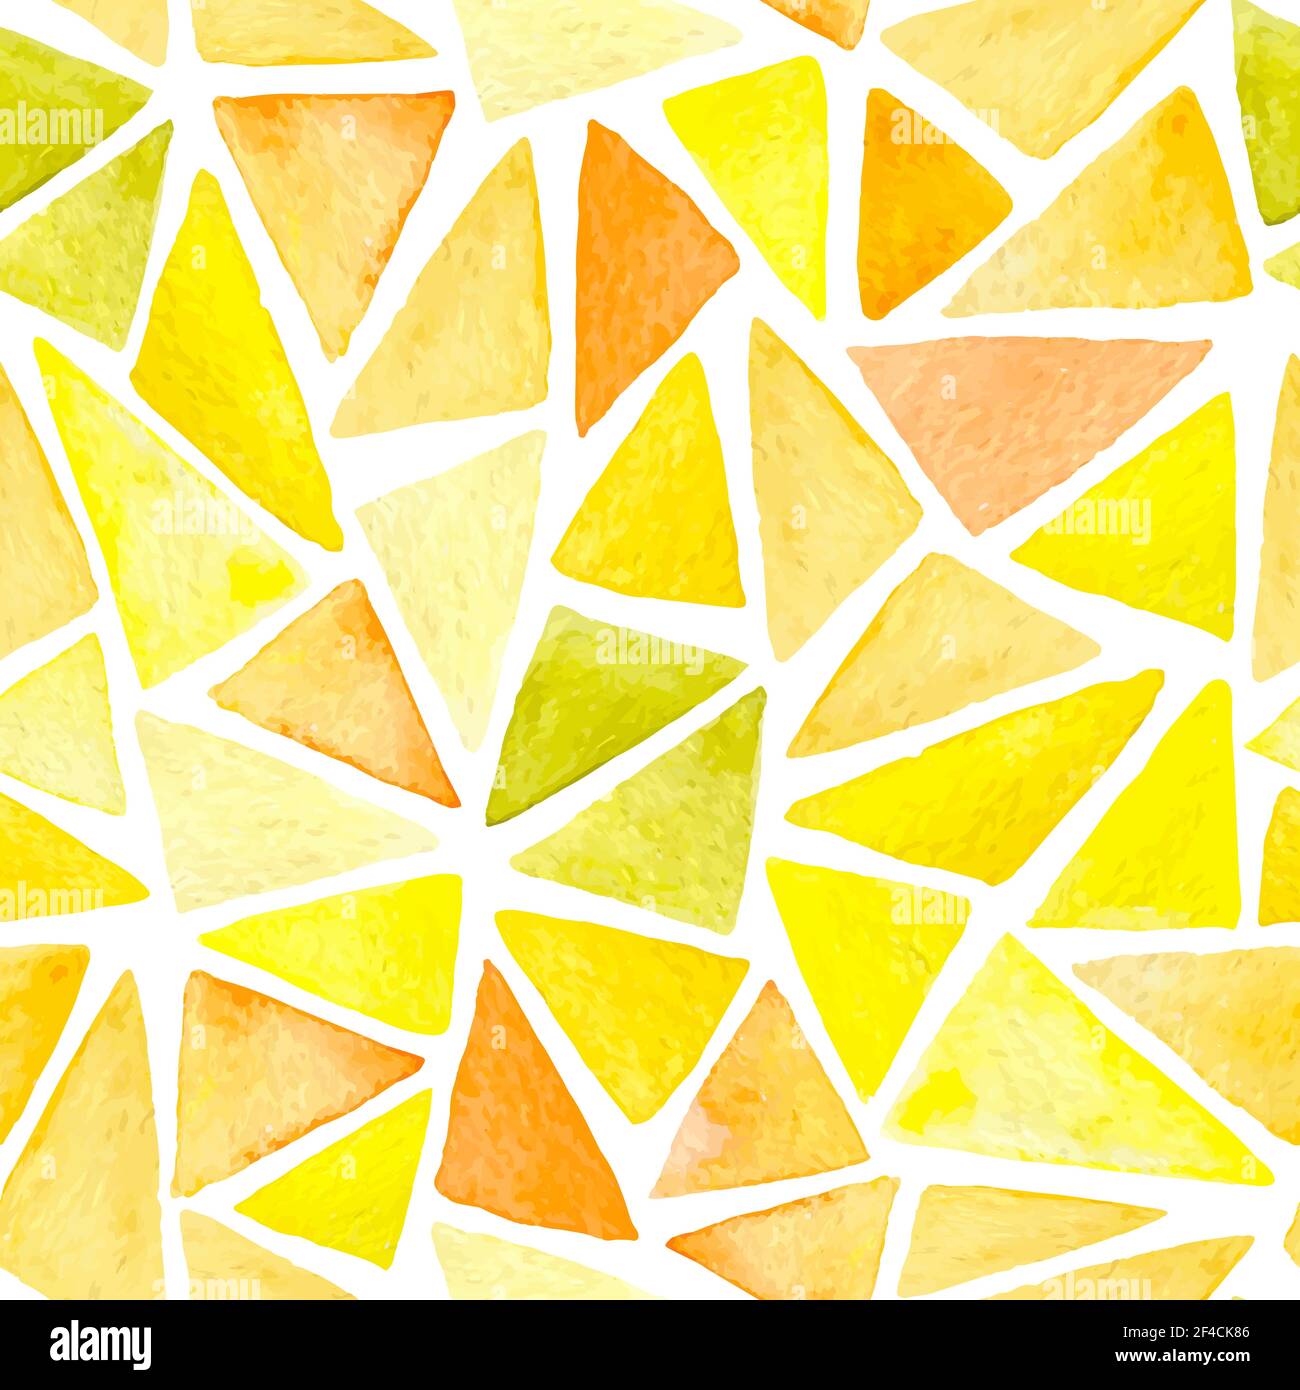 Abstrakter Vektor Aquarell Nahtloses Muster mit gelben und orangen Dreiecken Auf weißem Hintergrund Stock Vektor